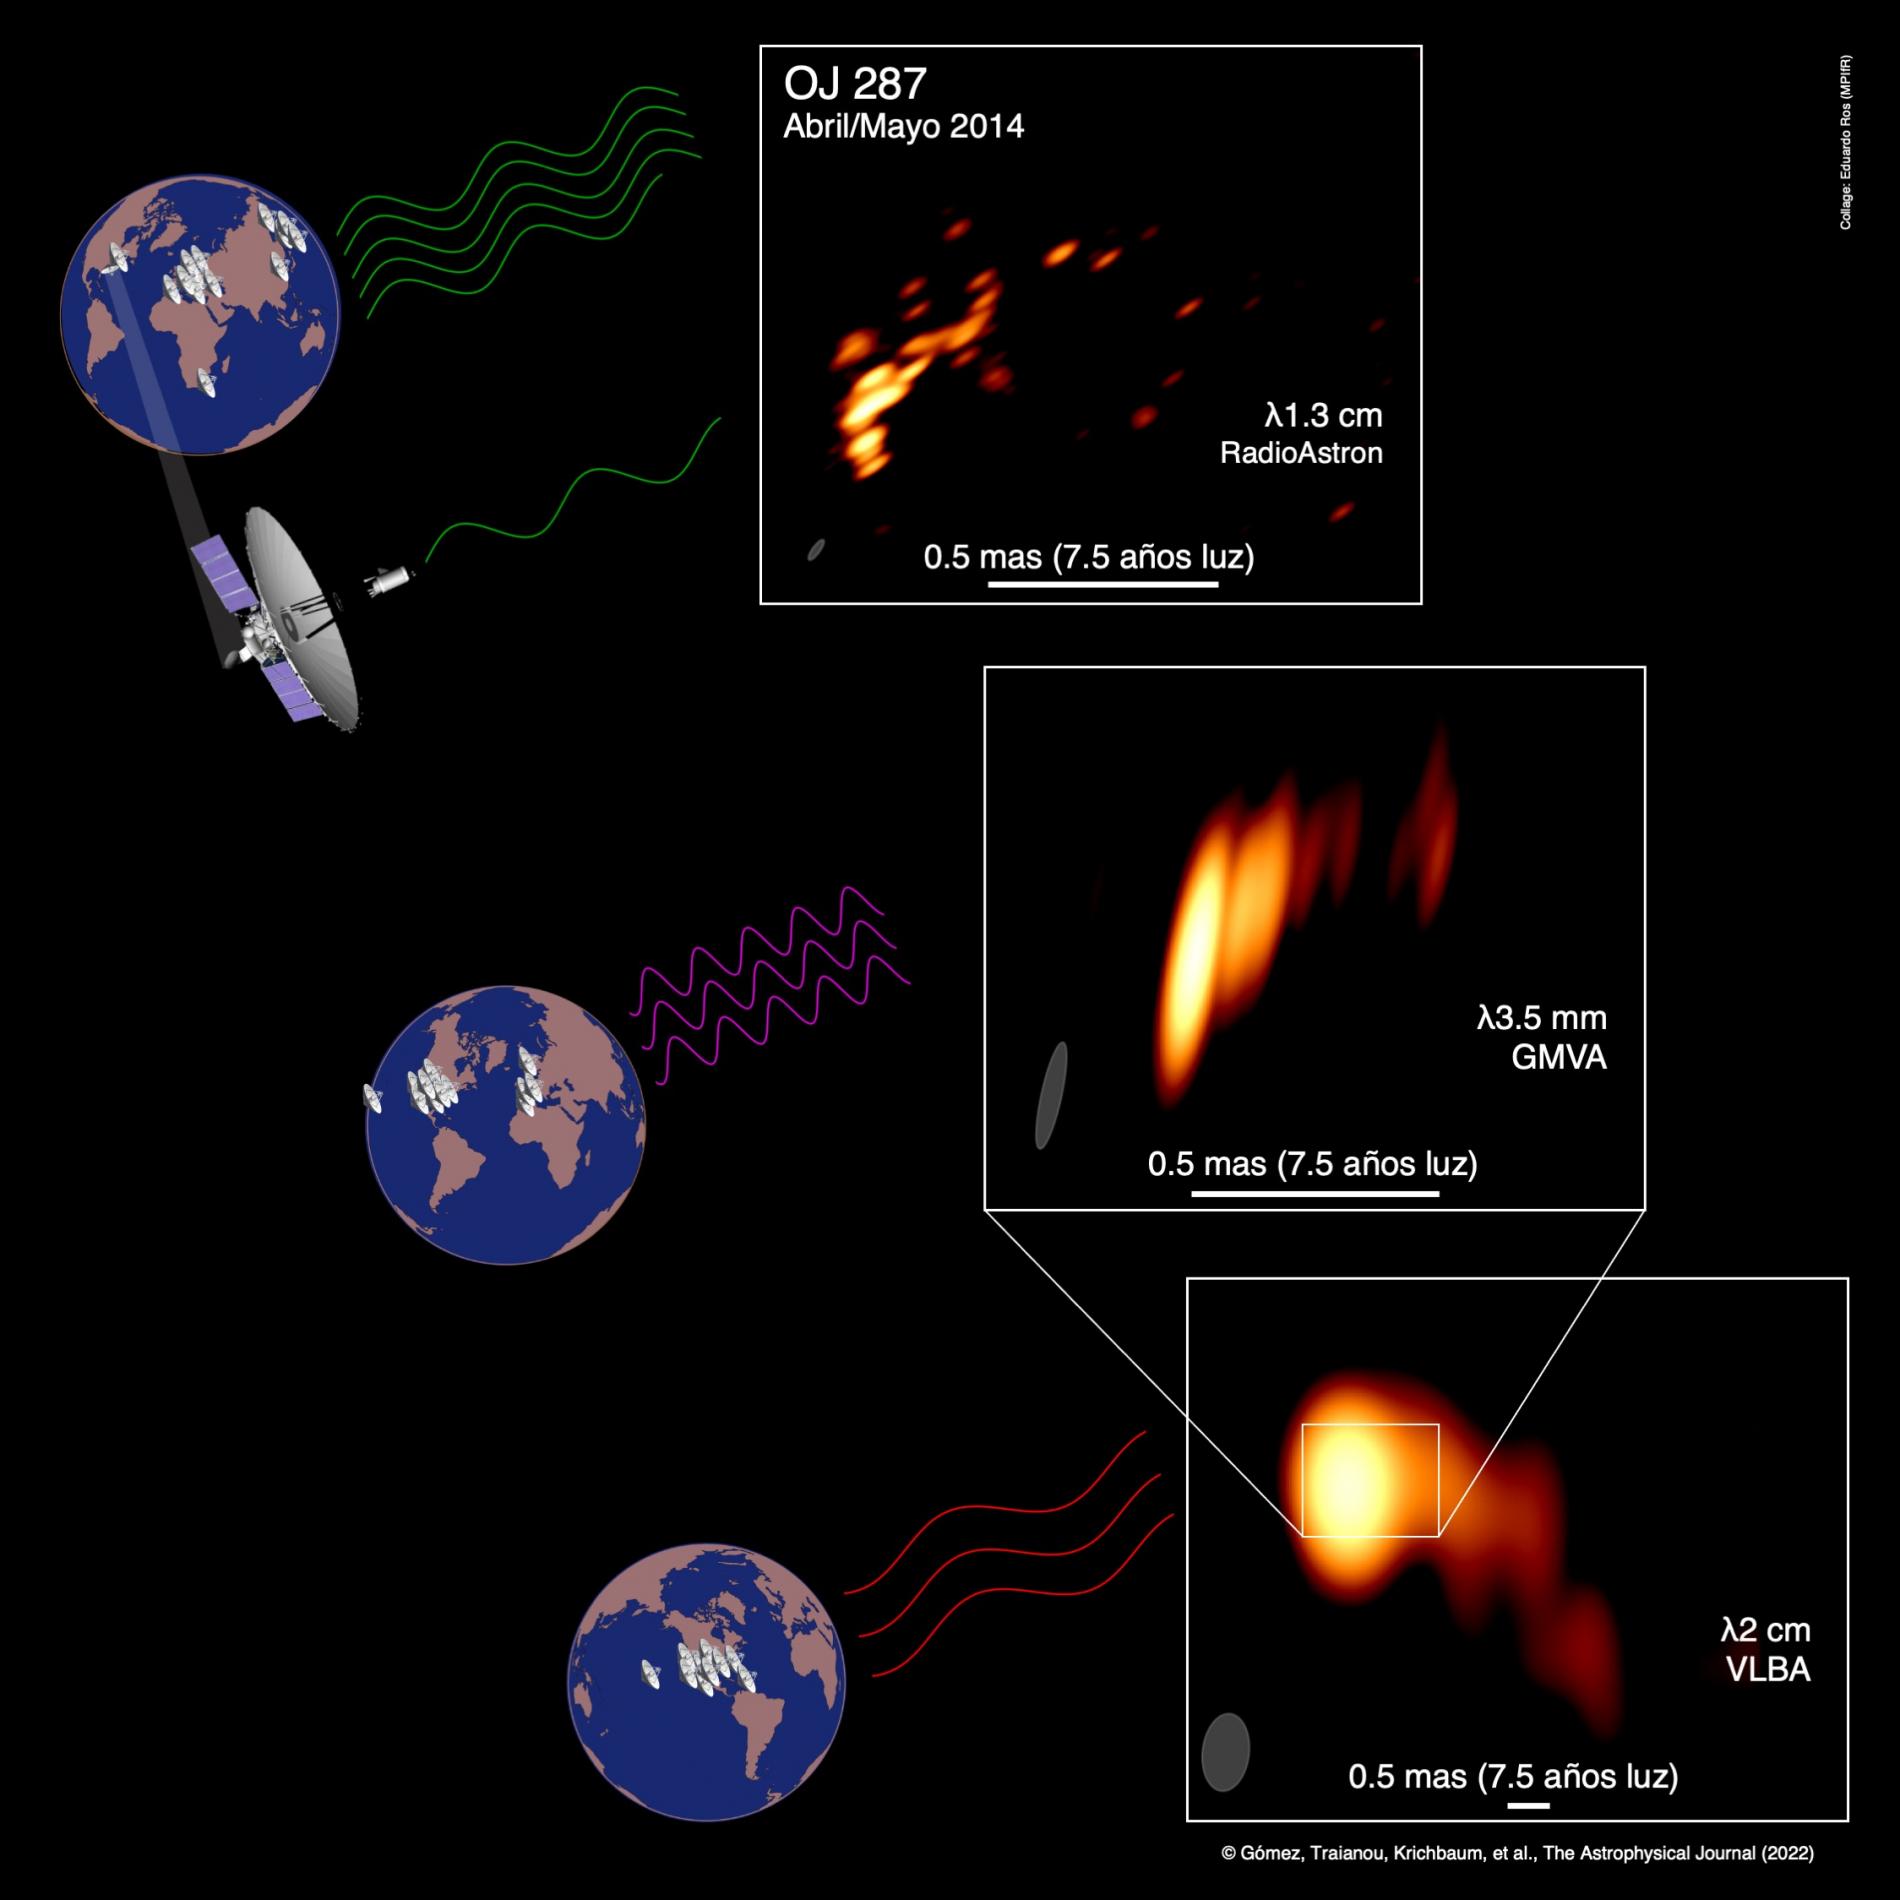 Dibujo que muestra los conjuntos de observación y las imágenes del chorro curvo en la galaxia activa OJ 287. De arriba a abajo, un conjunto global de radiotelescopios que incluye el observatorio espacial Spektr-R (de 10 m de diámetro, no a escala), que ha permitido una observación récord de 0,012 miliarcosegundos (mas); las observaciones en longitudes de onda milimétricas del Global mm-VLBI Array; y el Very Long Baseline Array del NRAO estadounidense. Crédito: Collage de Eduardo Ros (MPIfR); imágenes de radio de Gómez et al. (The Astrophysical Journal, 2022); globo terráqueo de worldmapgenerator.com; vista artística de RadioAstron de la Asociación Lavochkin.